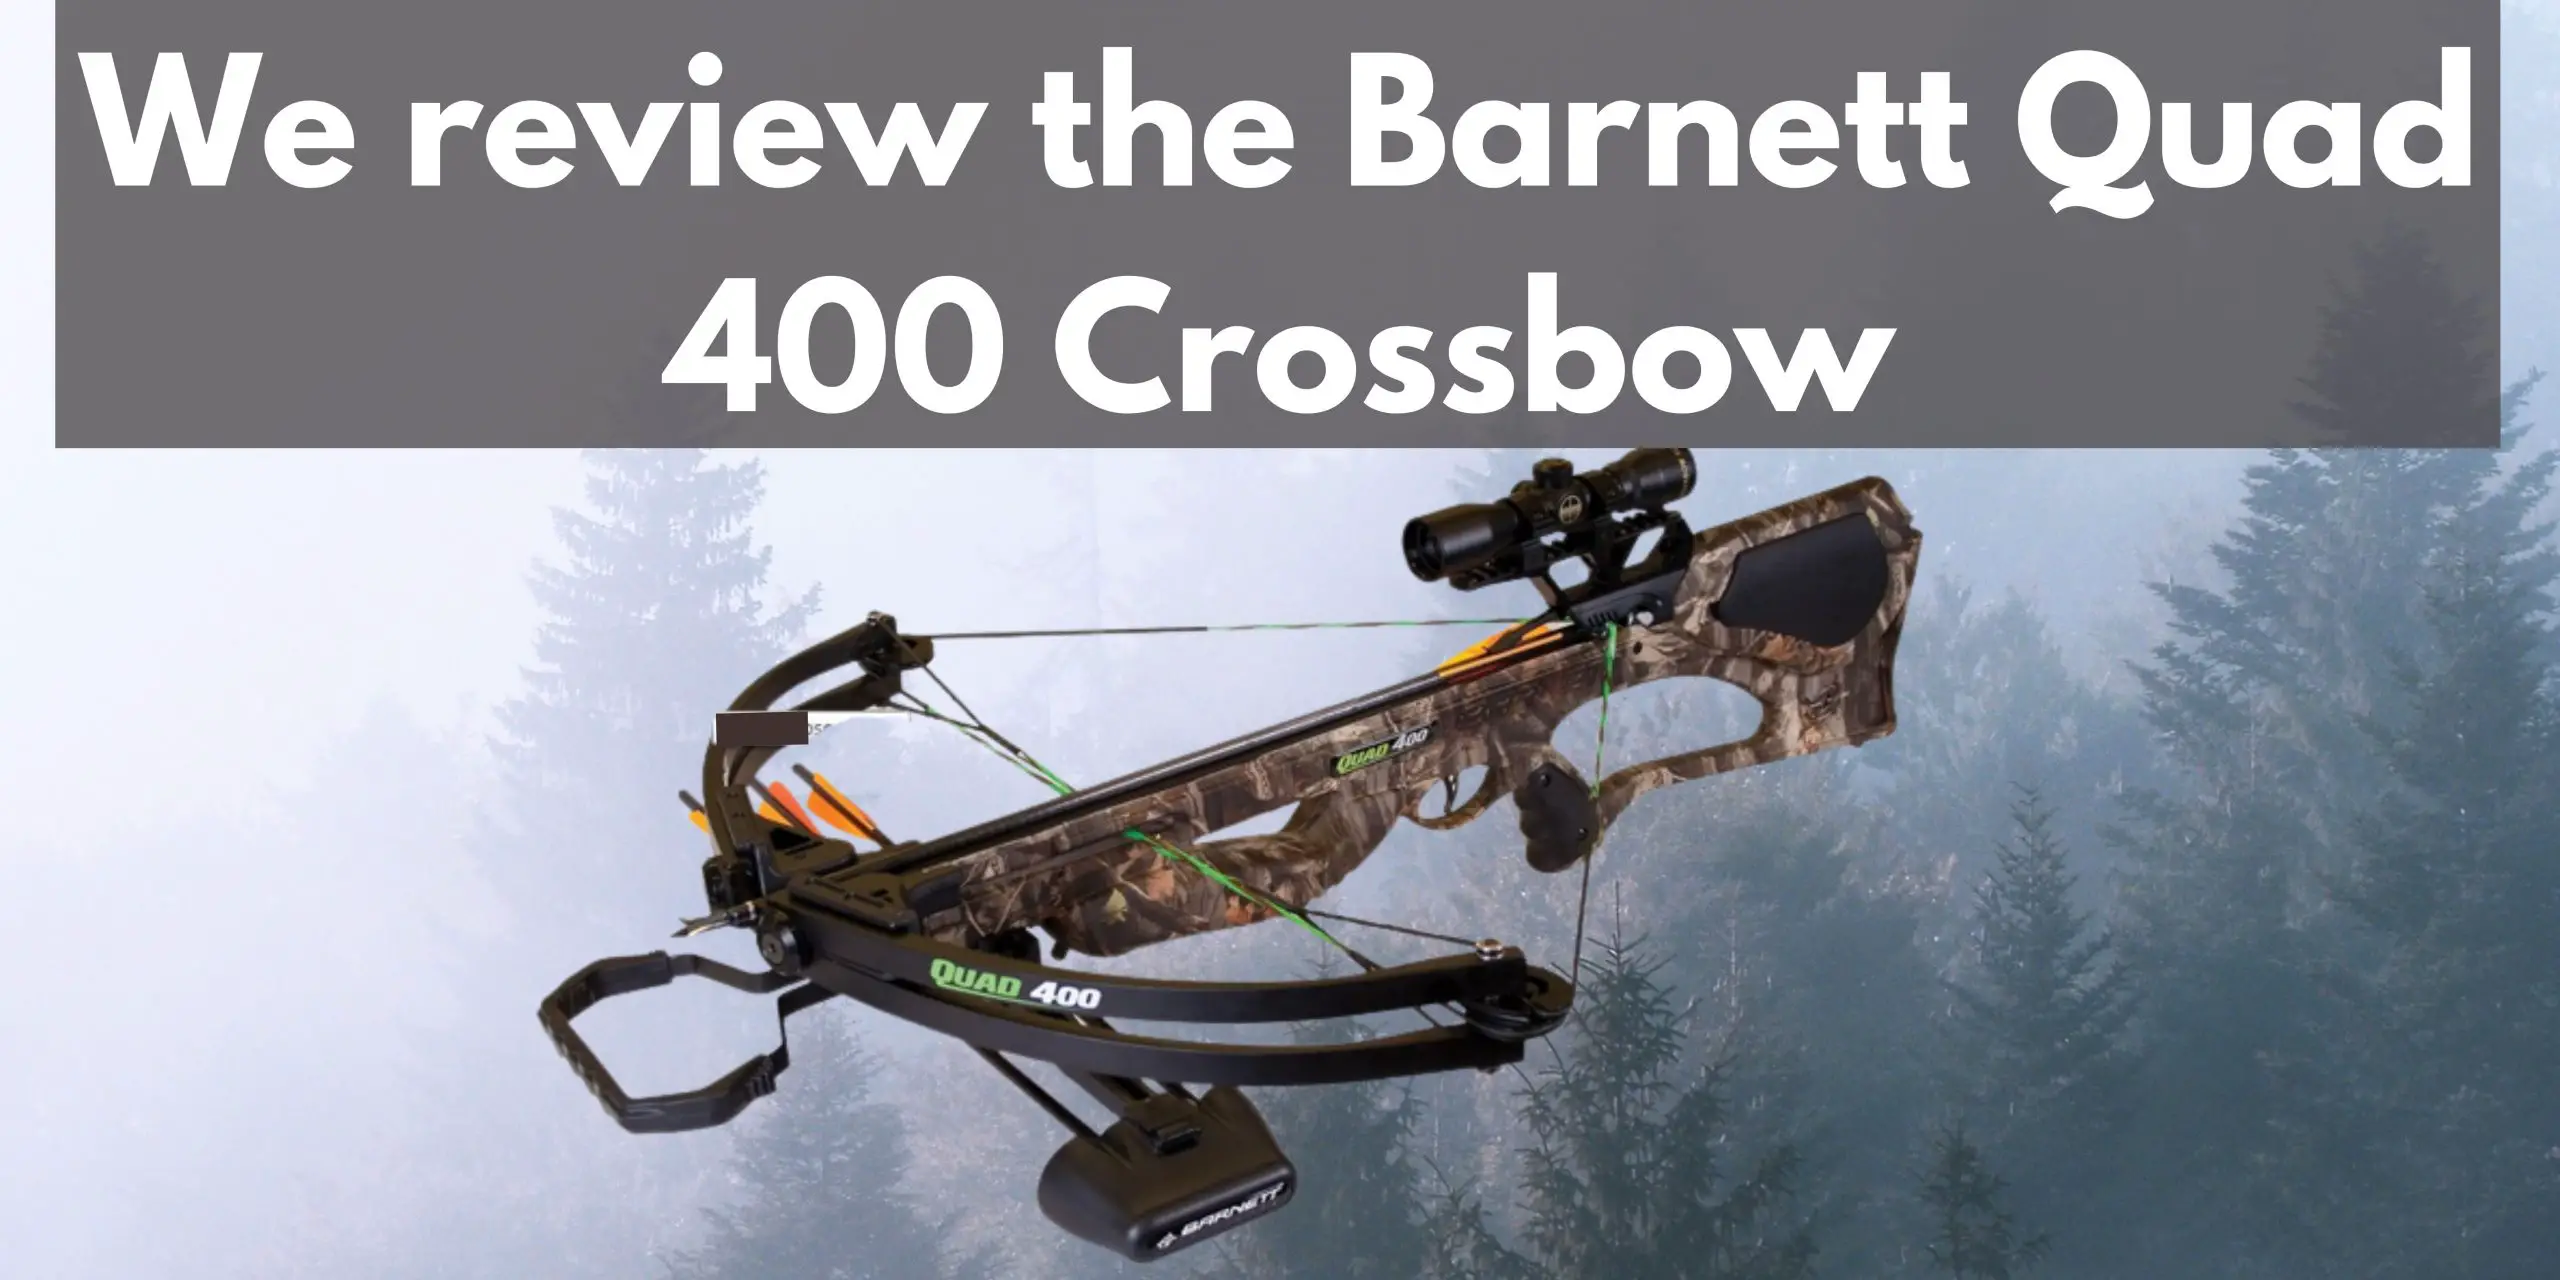 We review the Barnett Quad 400 Crossbow